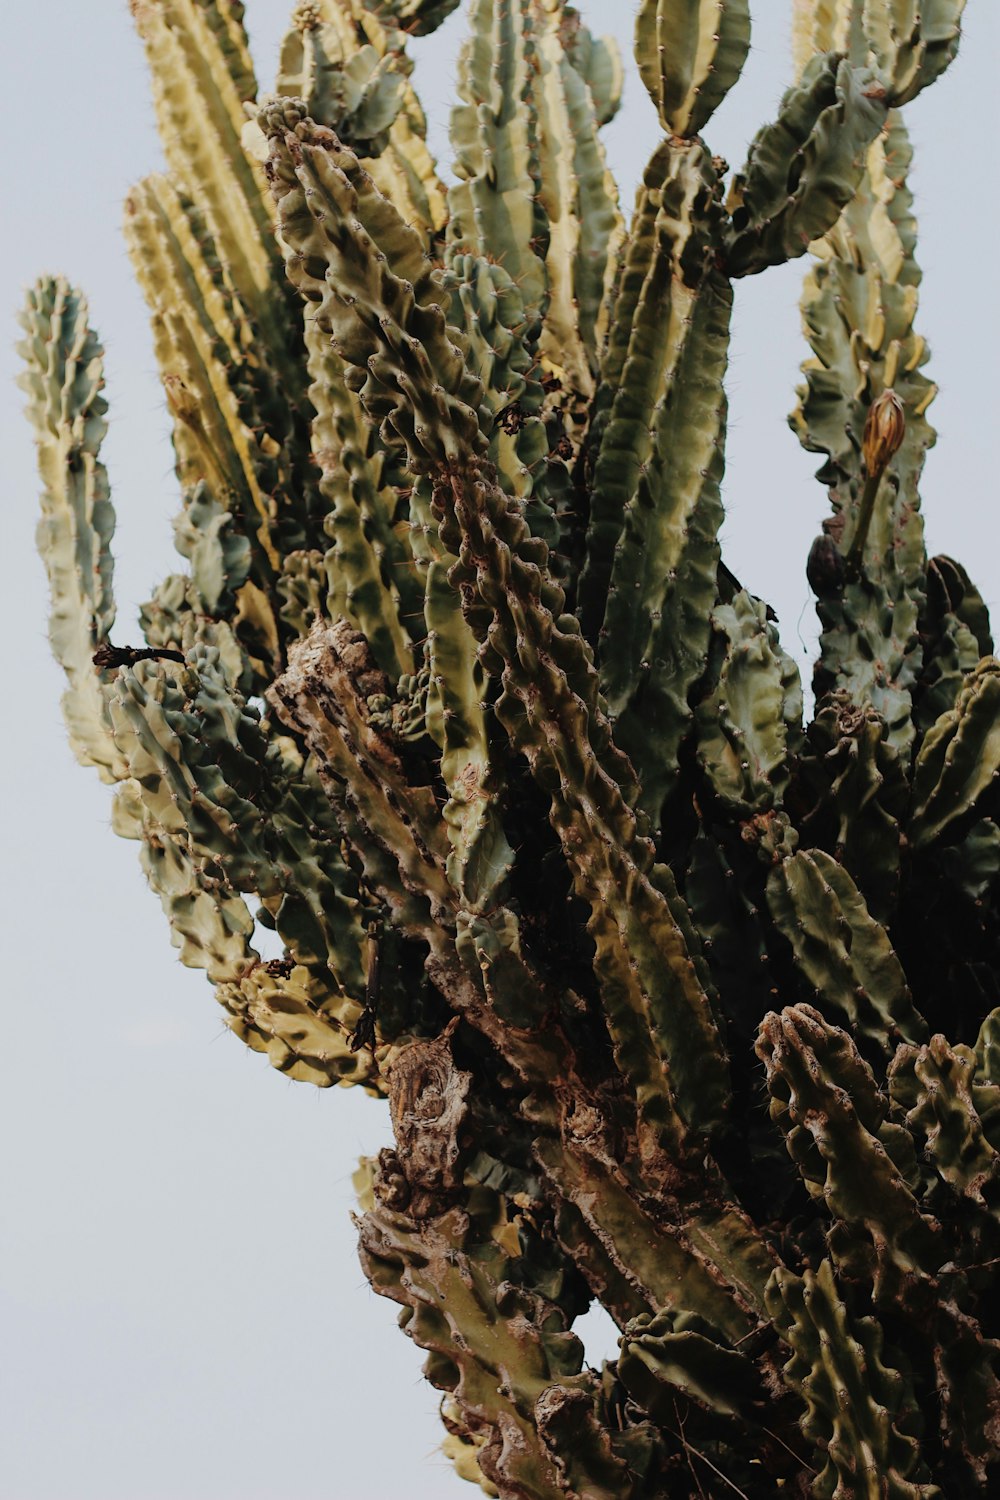 a close up of a cactus plant against a blue sky